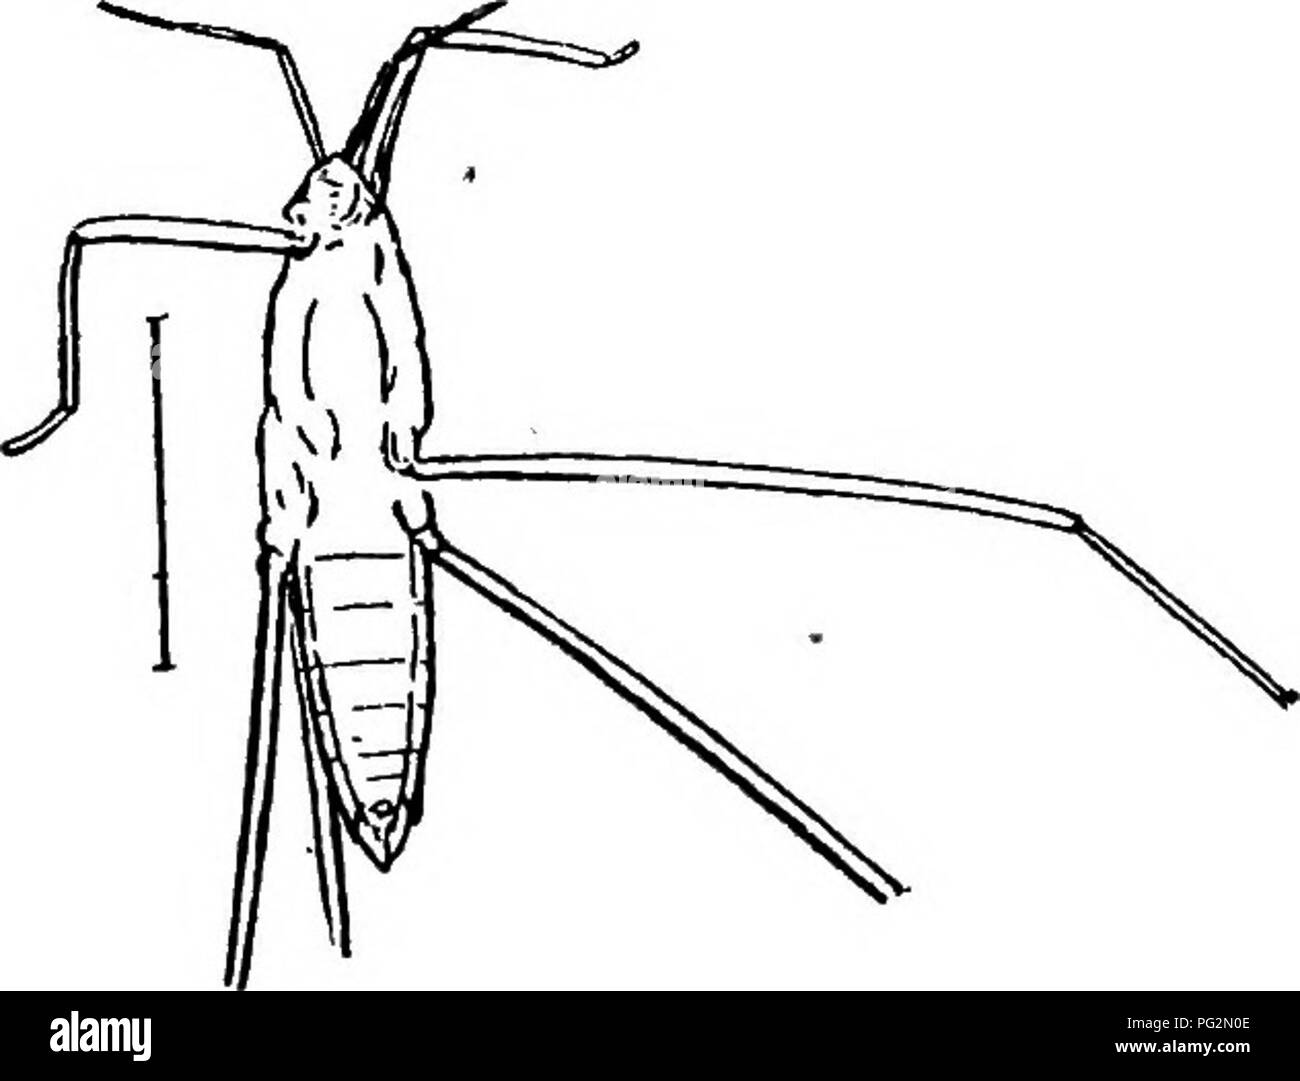 . Contributions to Canadian palaeontology. La paléontologie. X-Iaudlirach] CANADIAN FOSSIL INSECTES 127 longueur. La tête est triangulaire, avec près d'equilaterally très légèrement les yeux exorbités. La première et troisième articulations des antennes sont presque égaux en longueur, et l'unité sont environ un tiers plus long que le deuxième. La première est beaucoup plus longue que la tête. La tête et le thorax pris ensemble sont un peu plus long que l'abdomen, le thorax étant un peu plus courtes. L'abdomen est près de deux fois et demi tant qu'elle est large à la base, et présente les coins légèrement en saillie de l'communique coopzone 9-09-fr Banque D'Images